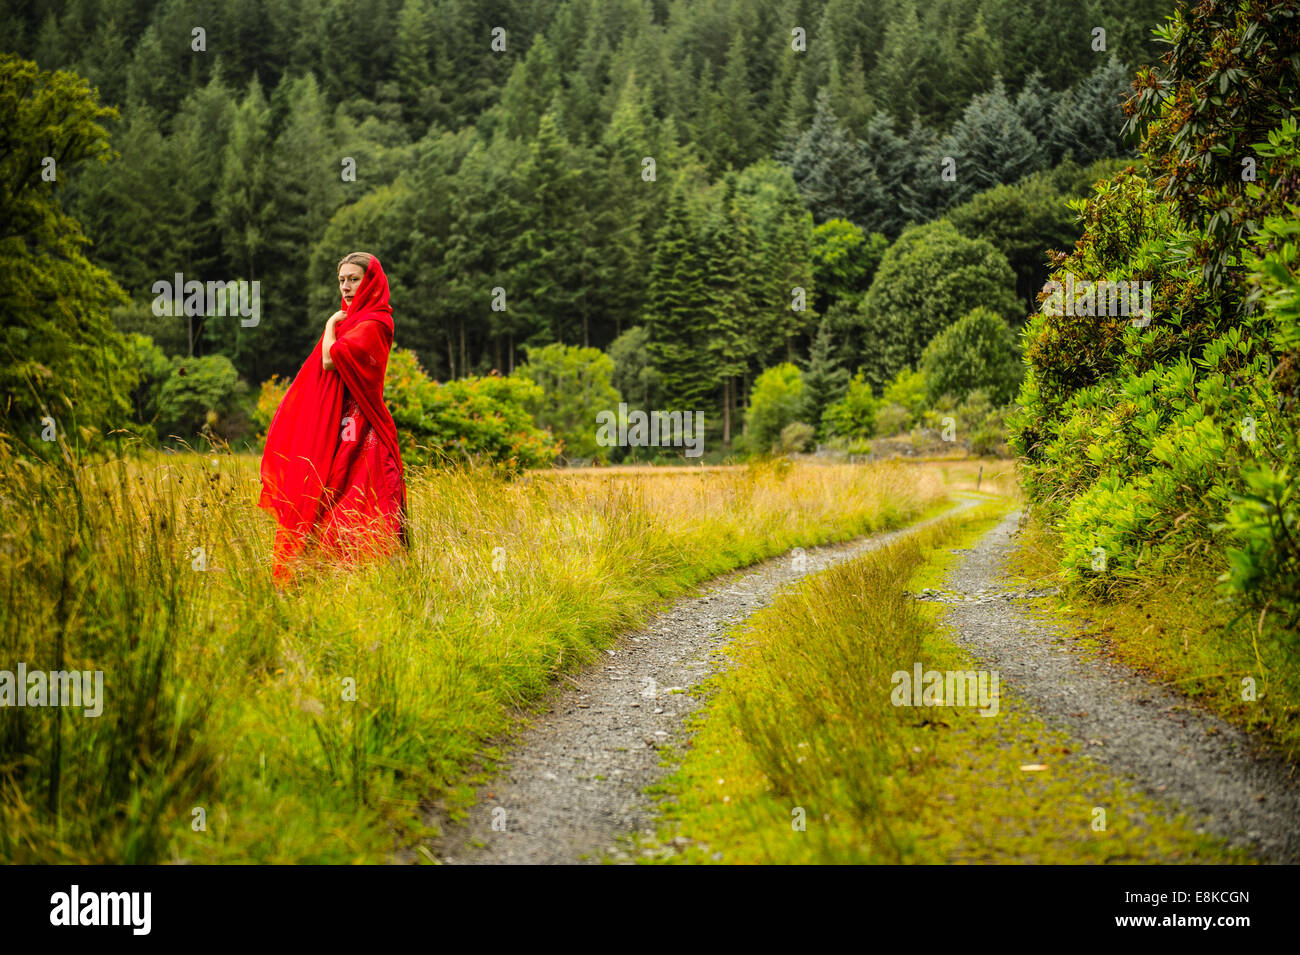 Scharlachrote Frau: eine nachdenkliche introvertierte nachdenklich Mädchen  trägt eine blutroten Kleid Kleid allein im Wald Landschaft Stockfotografie  - Alamy